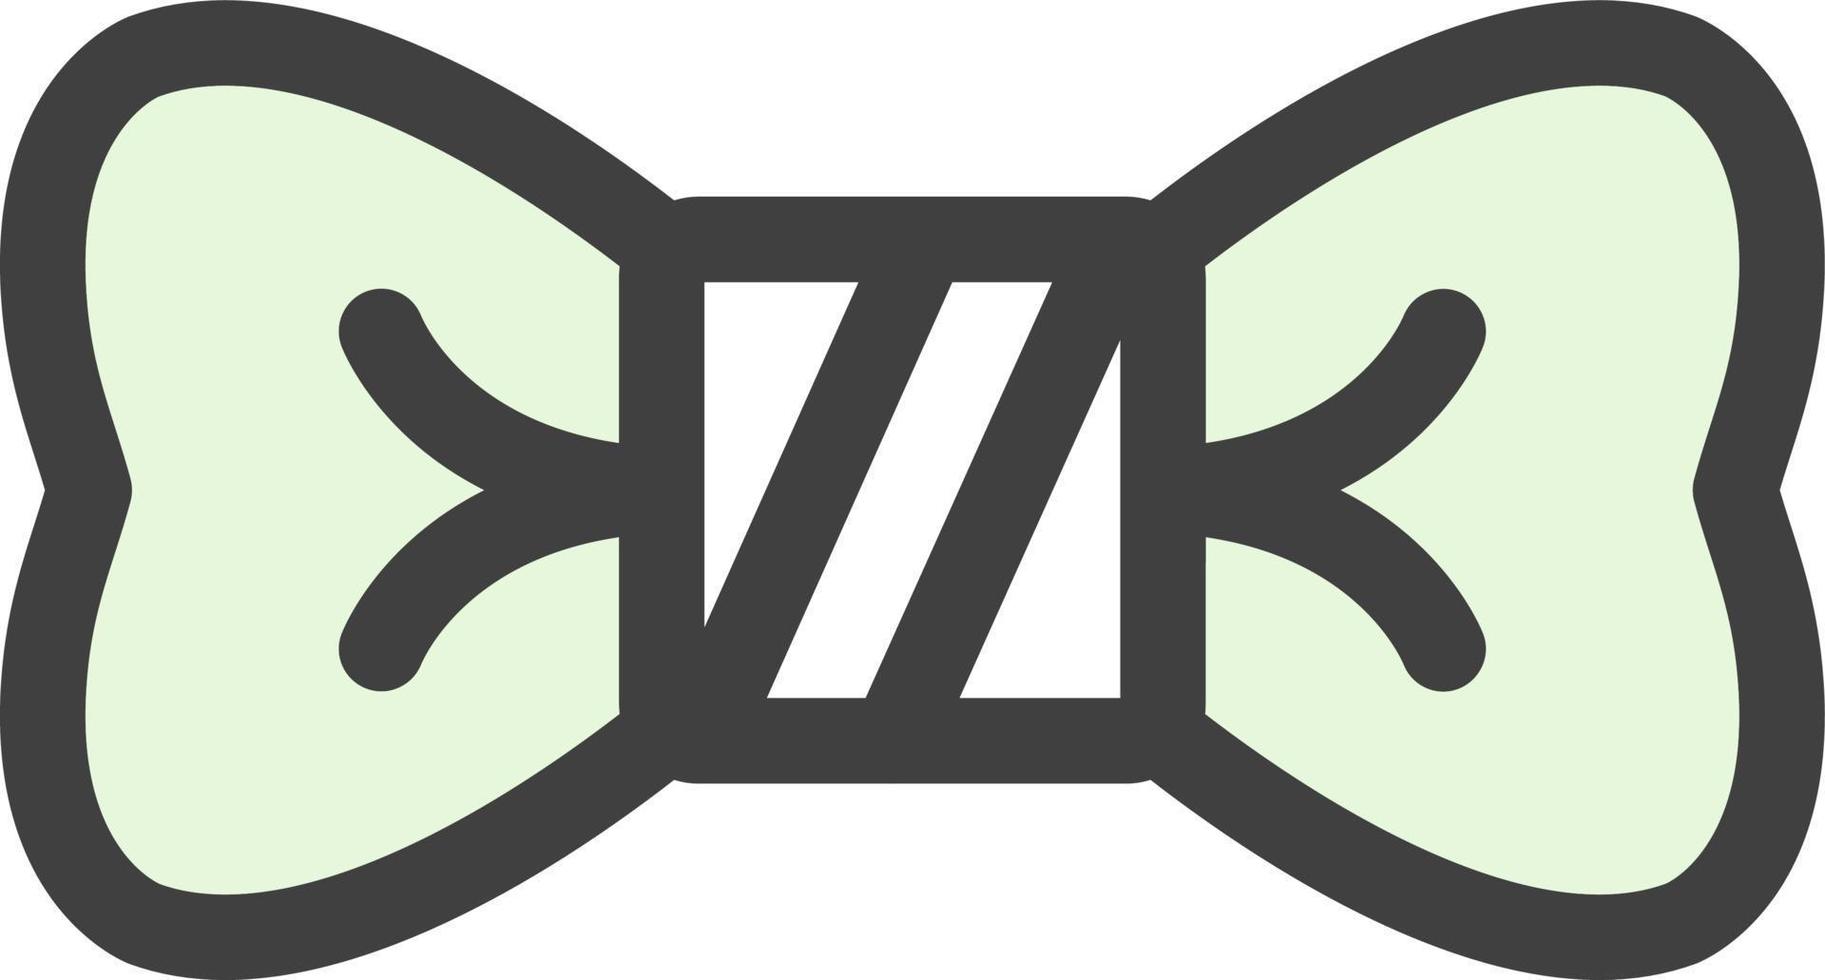 rosett slips vektor ikon design